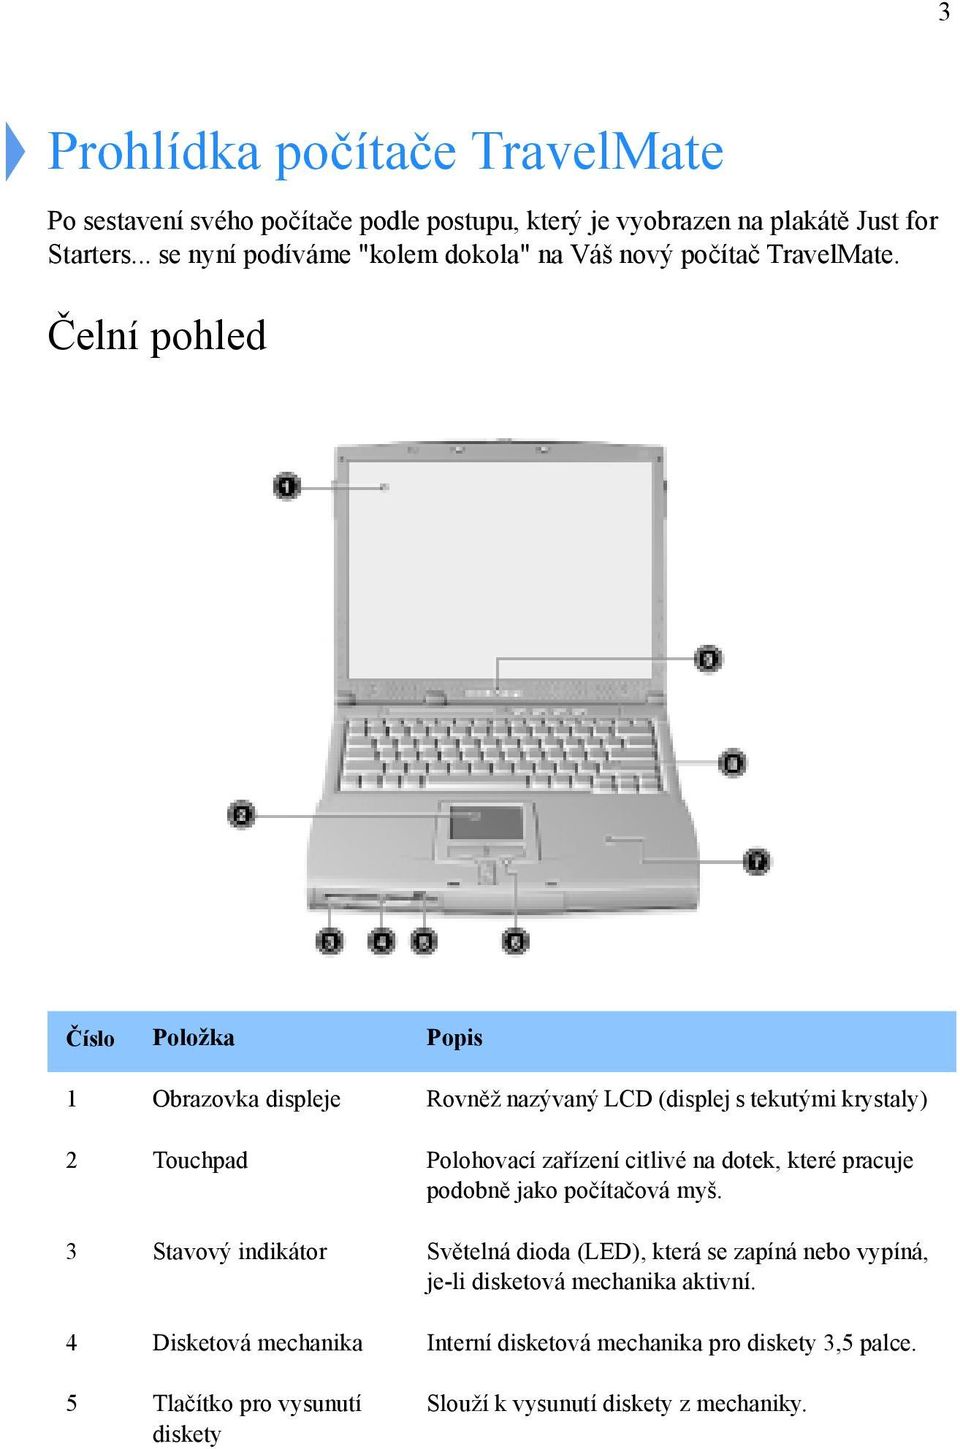 Čelní pohled Číslo Položka Popis 1 Obrazovka displeje Rovněž nazývaný LCD (displej s tekutými krystaly) 2 Touchpad Polohovací zařízení citlivé na dotek, které